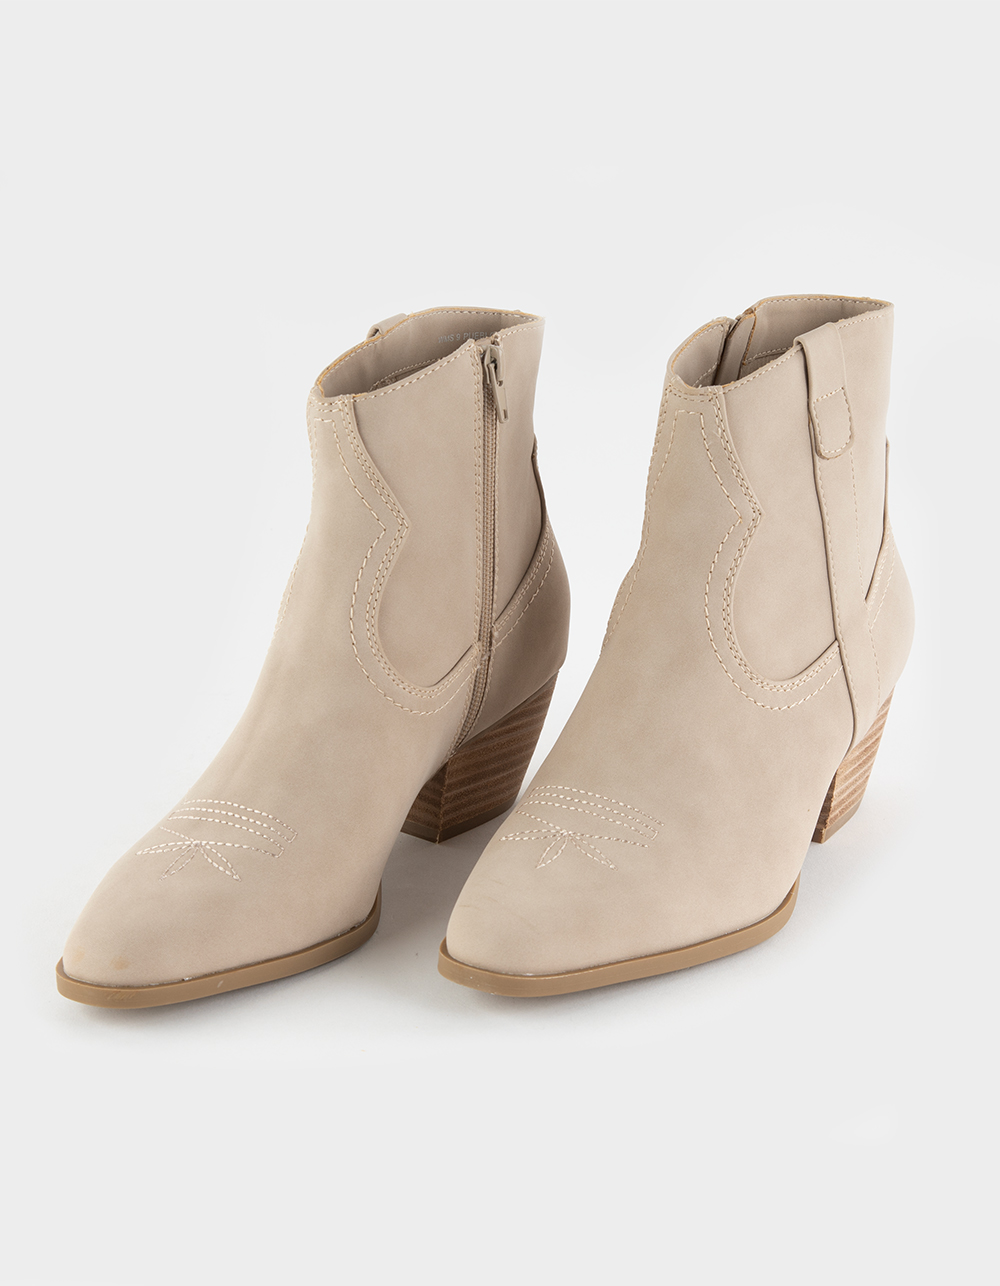 DOLCE VITA Pueblo Short Western Womens Boots